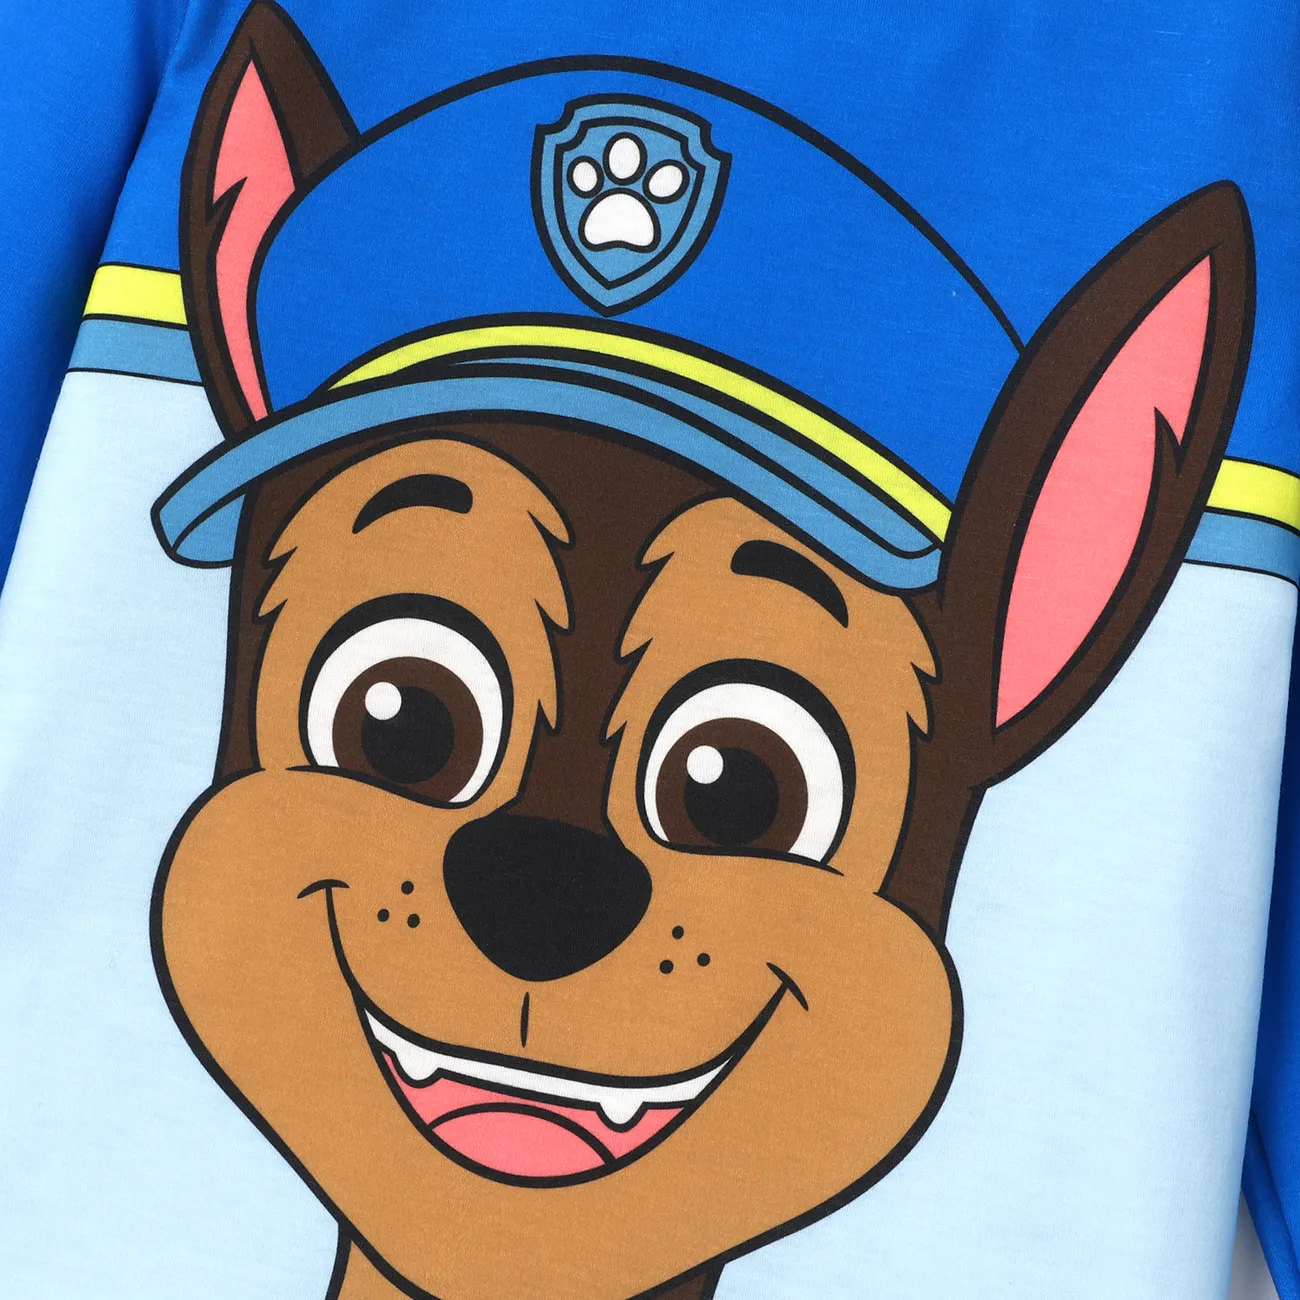 PAW Patrol Toddler Boy/Girl 2-Piece Cartoon Print Top and Pants Set Blue big image 1